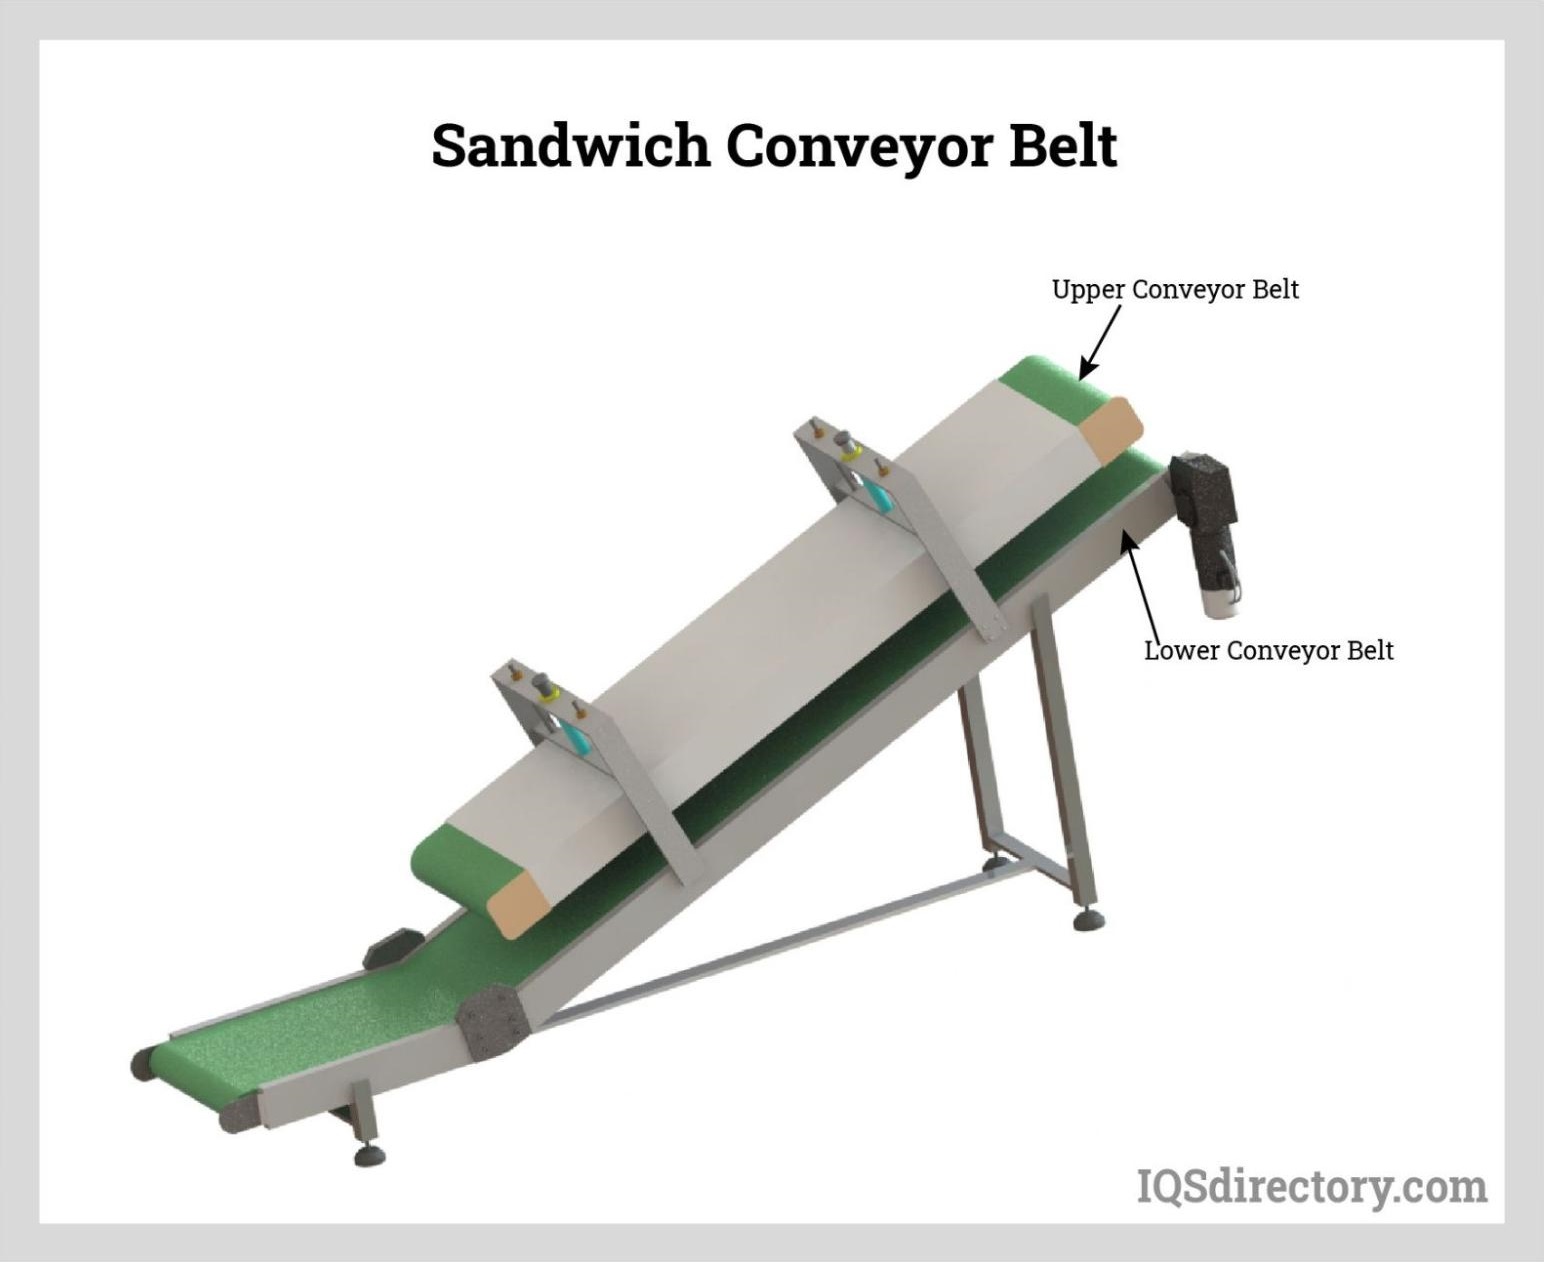 Sandwich Conveyor Belt